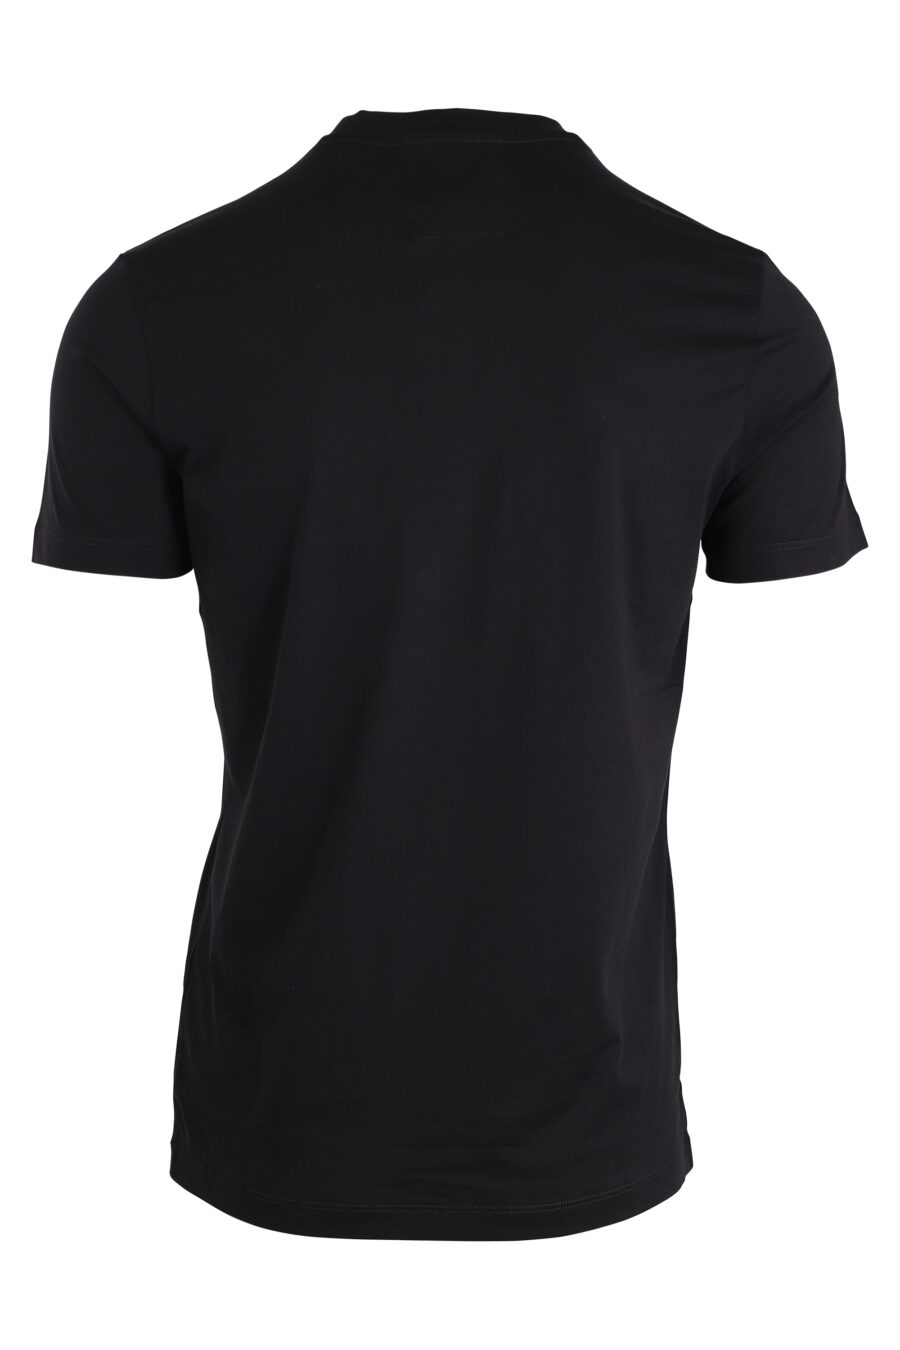 Camiseta negra con maxilogo letras blancas - IMG 4251